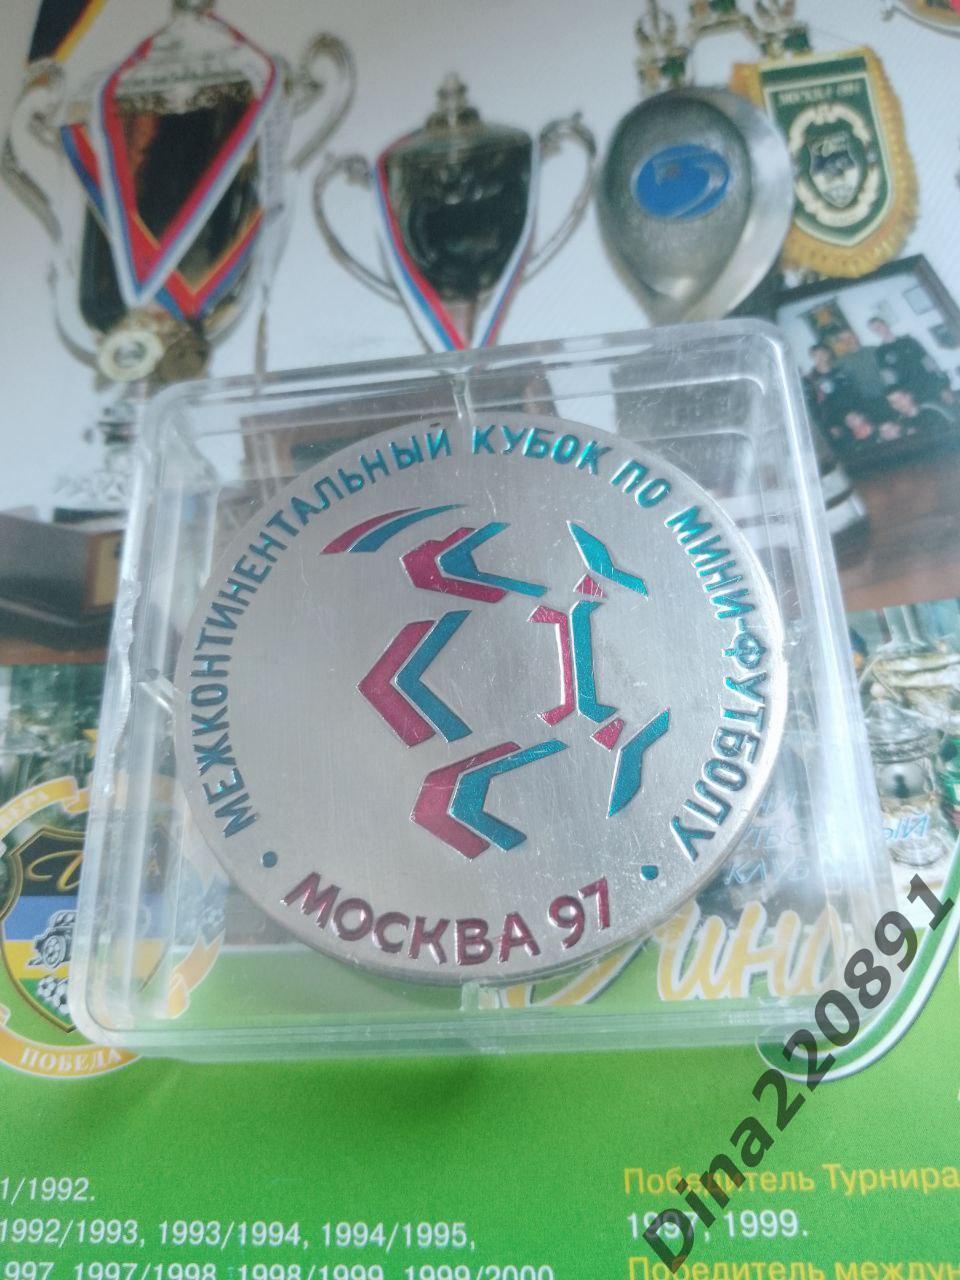 Памятная подарочная медаль Межконтинентальный кубок 1997г. Оригинал. 2